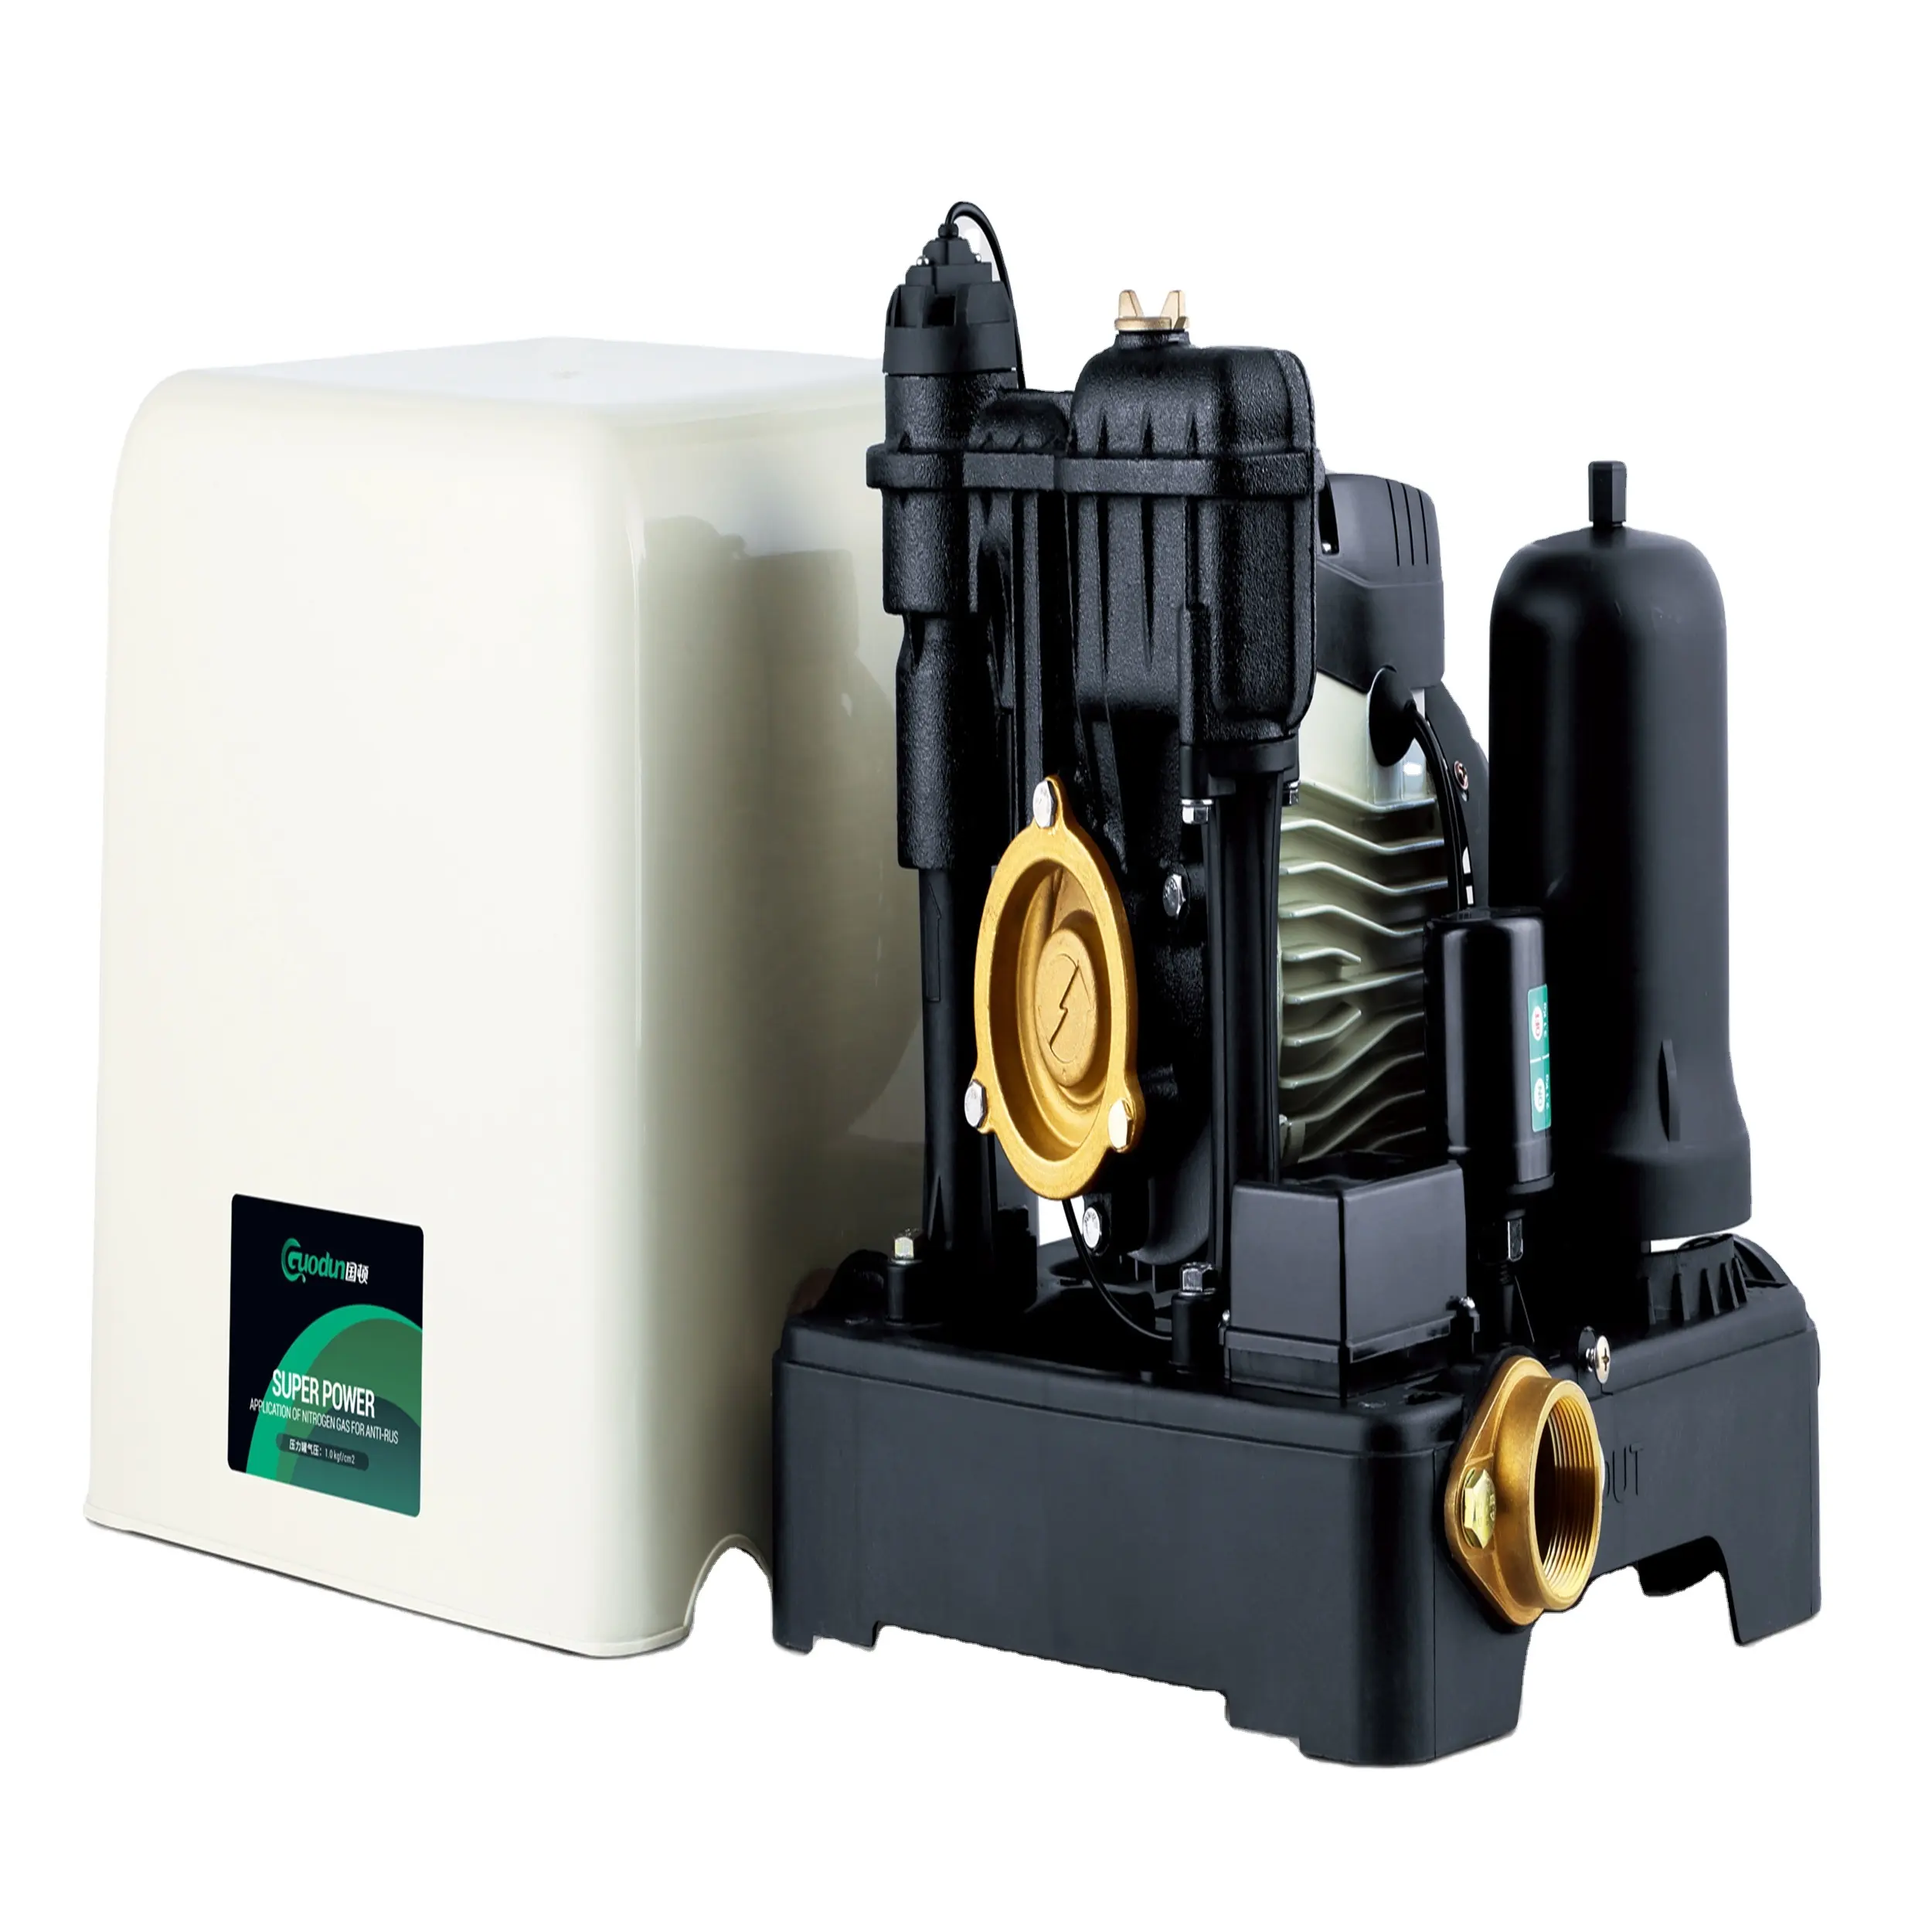 공장 직접 판매 0.35hp 마이크로 자체 프라이밍 압력 부스터 워터 펌프 자동 압력 제어 220v